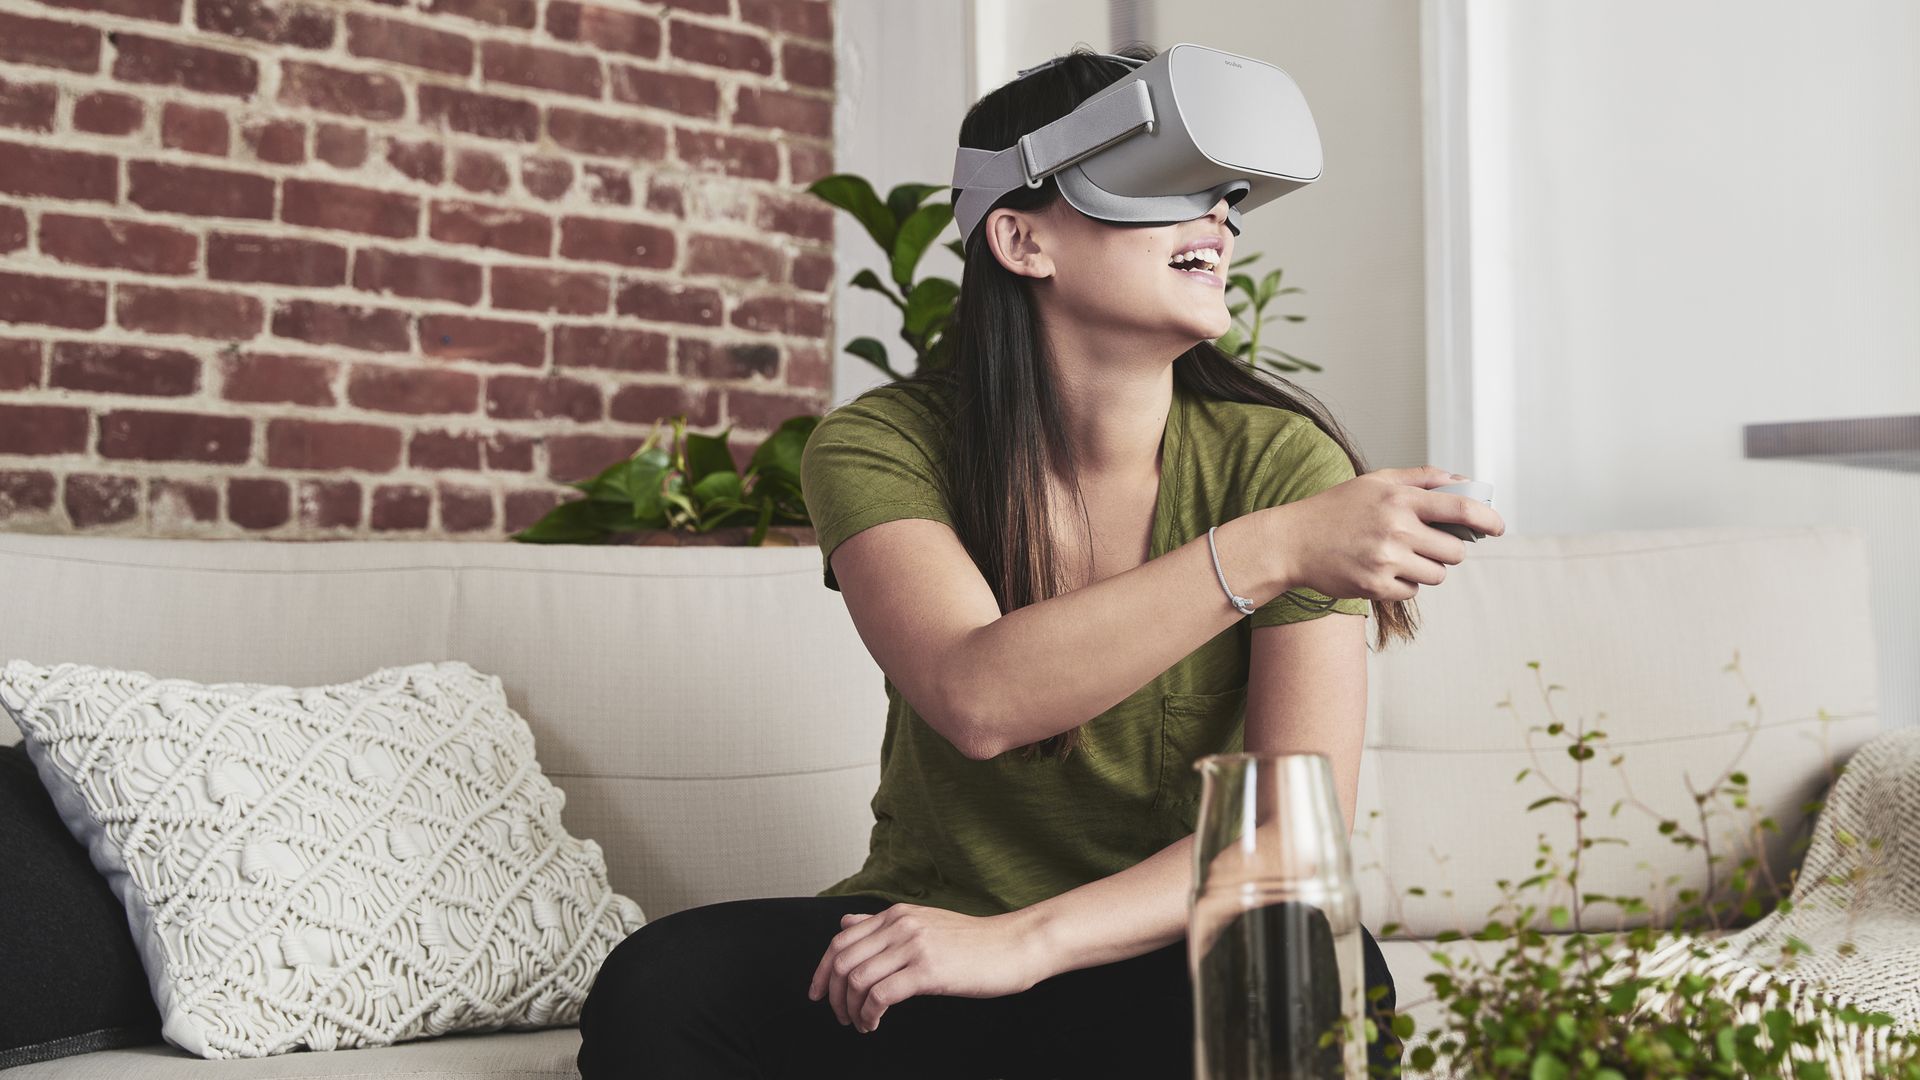 A woman wearing an Oculus Go VR headset